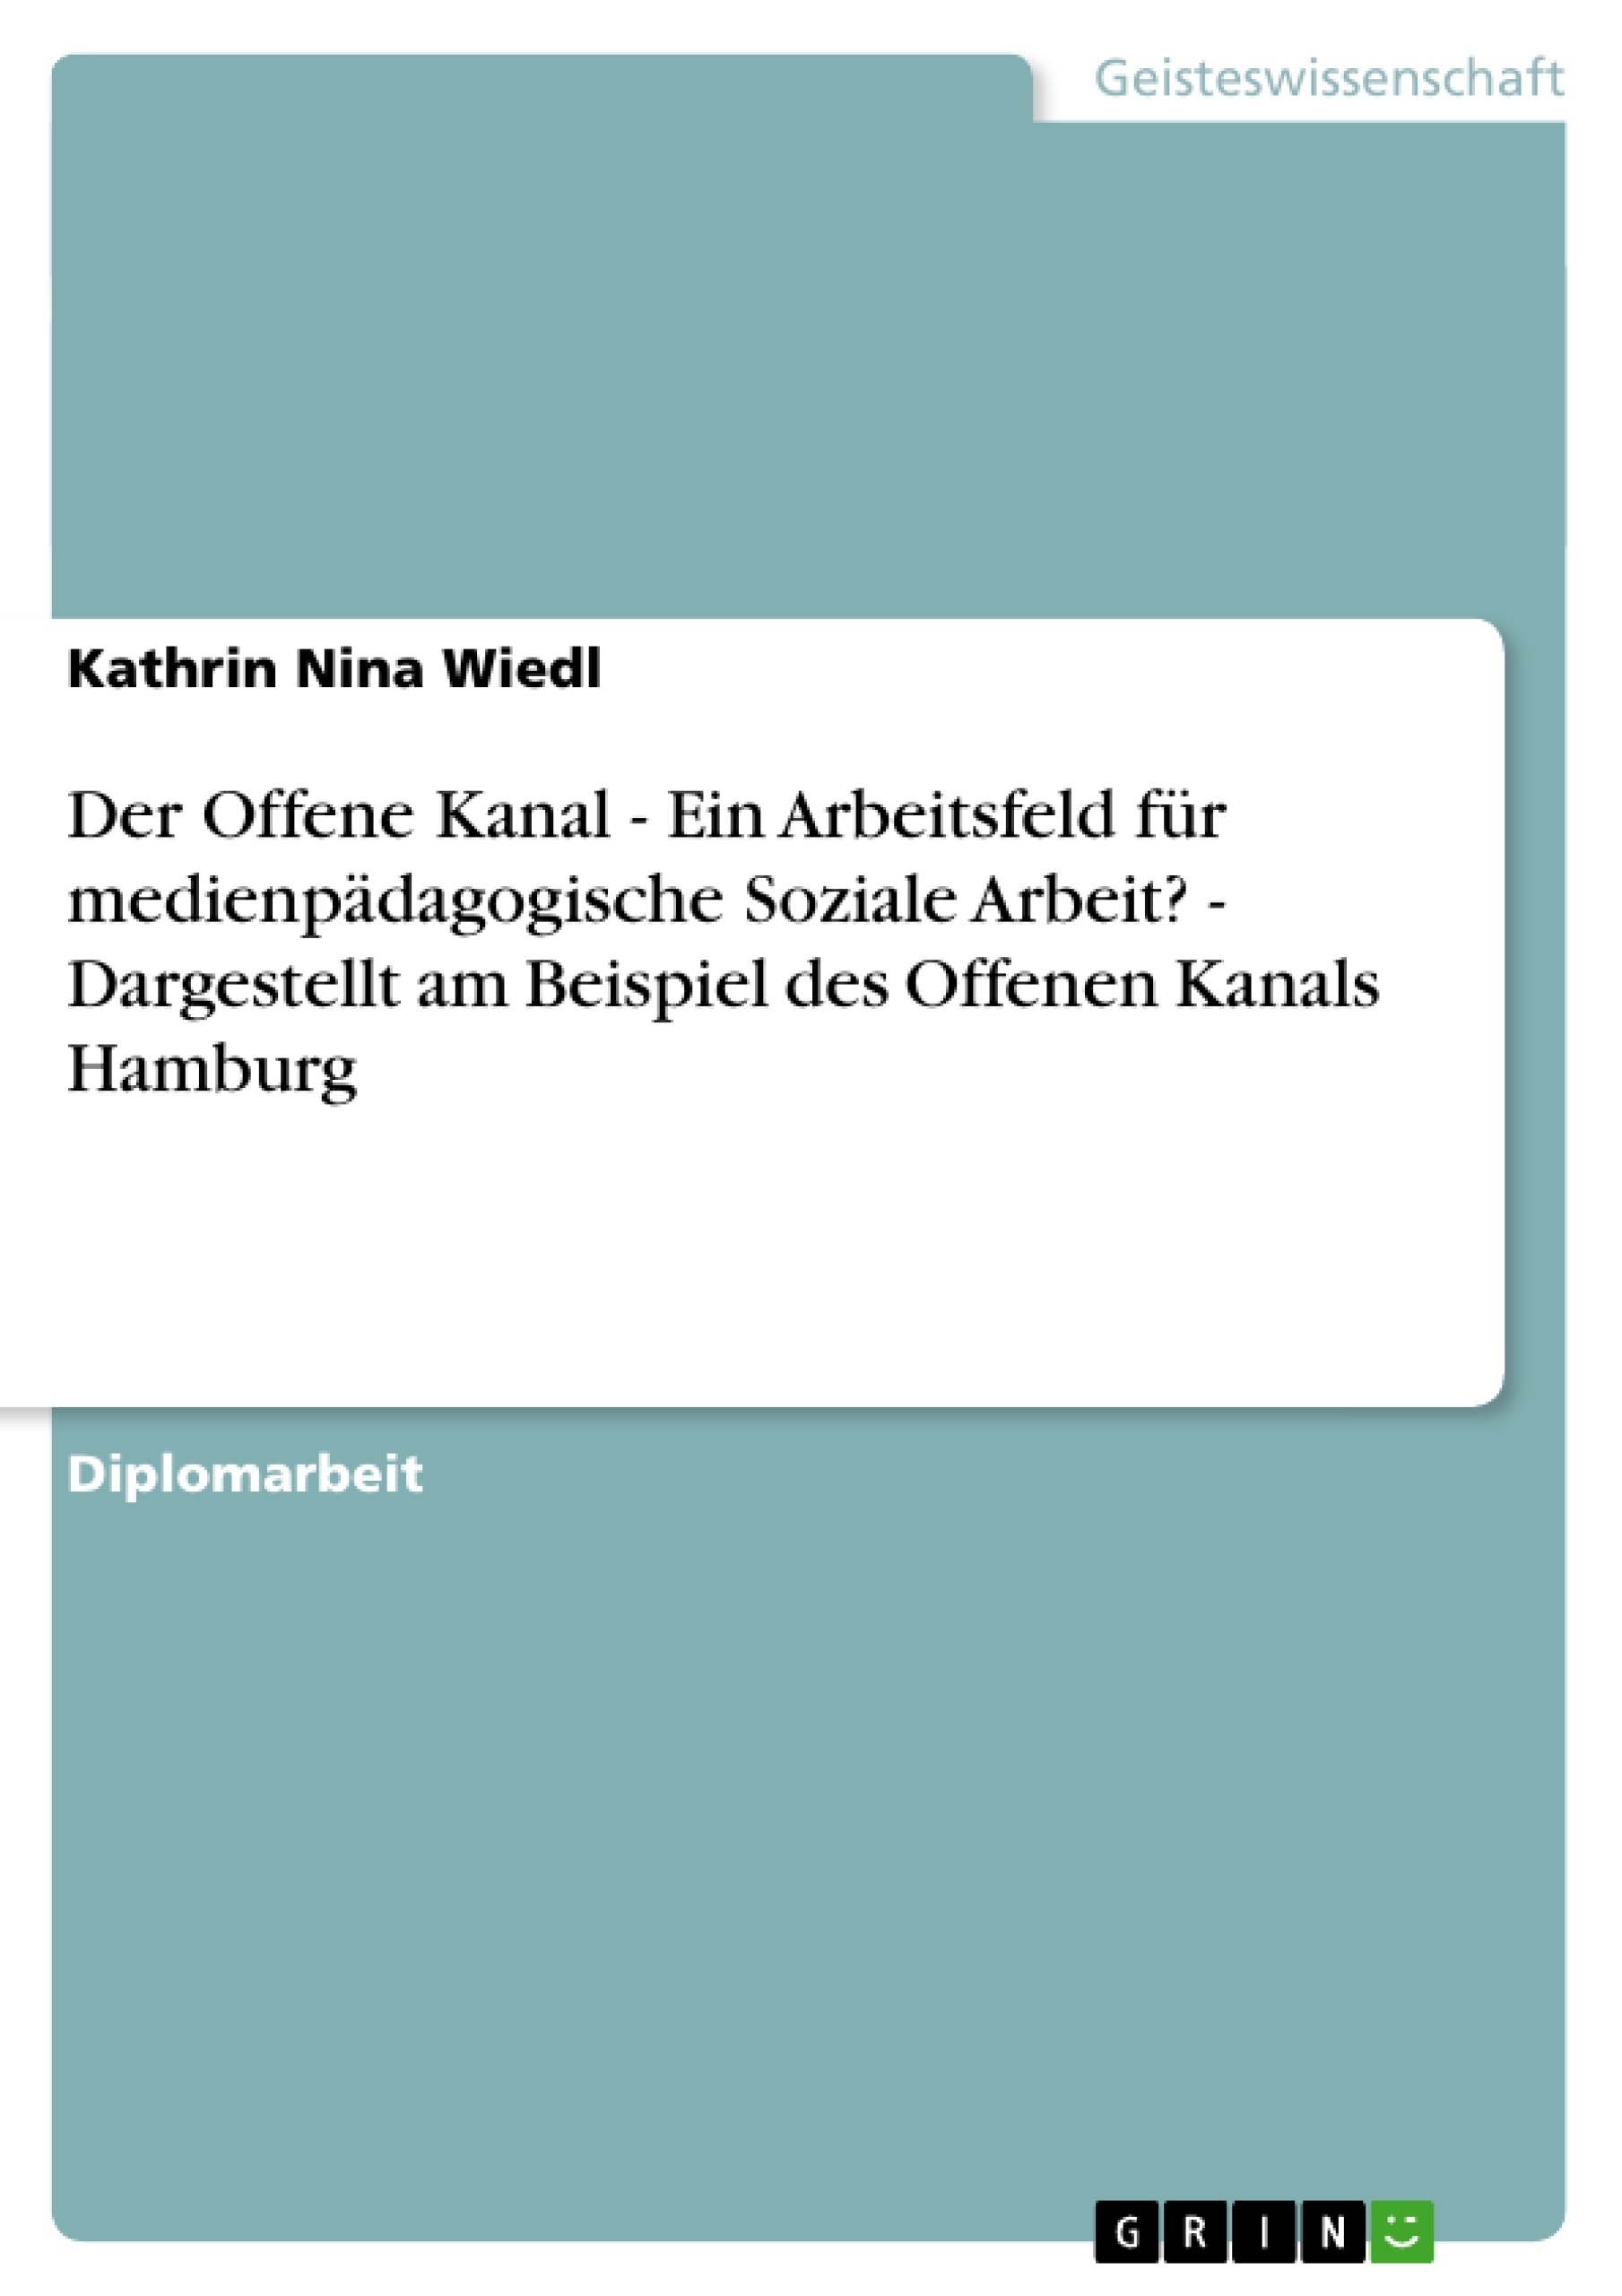 Title: Der Offene Kanal - Ein Arbeitsfeld für medienpädagogische Soziale Arbeit?  - Dargestellt am Beispiel des Offenen Kanals Hamburg